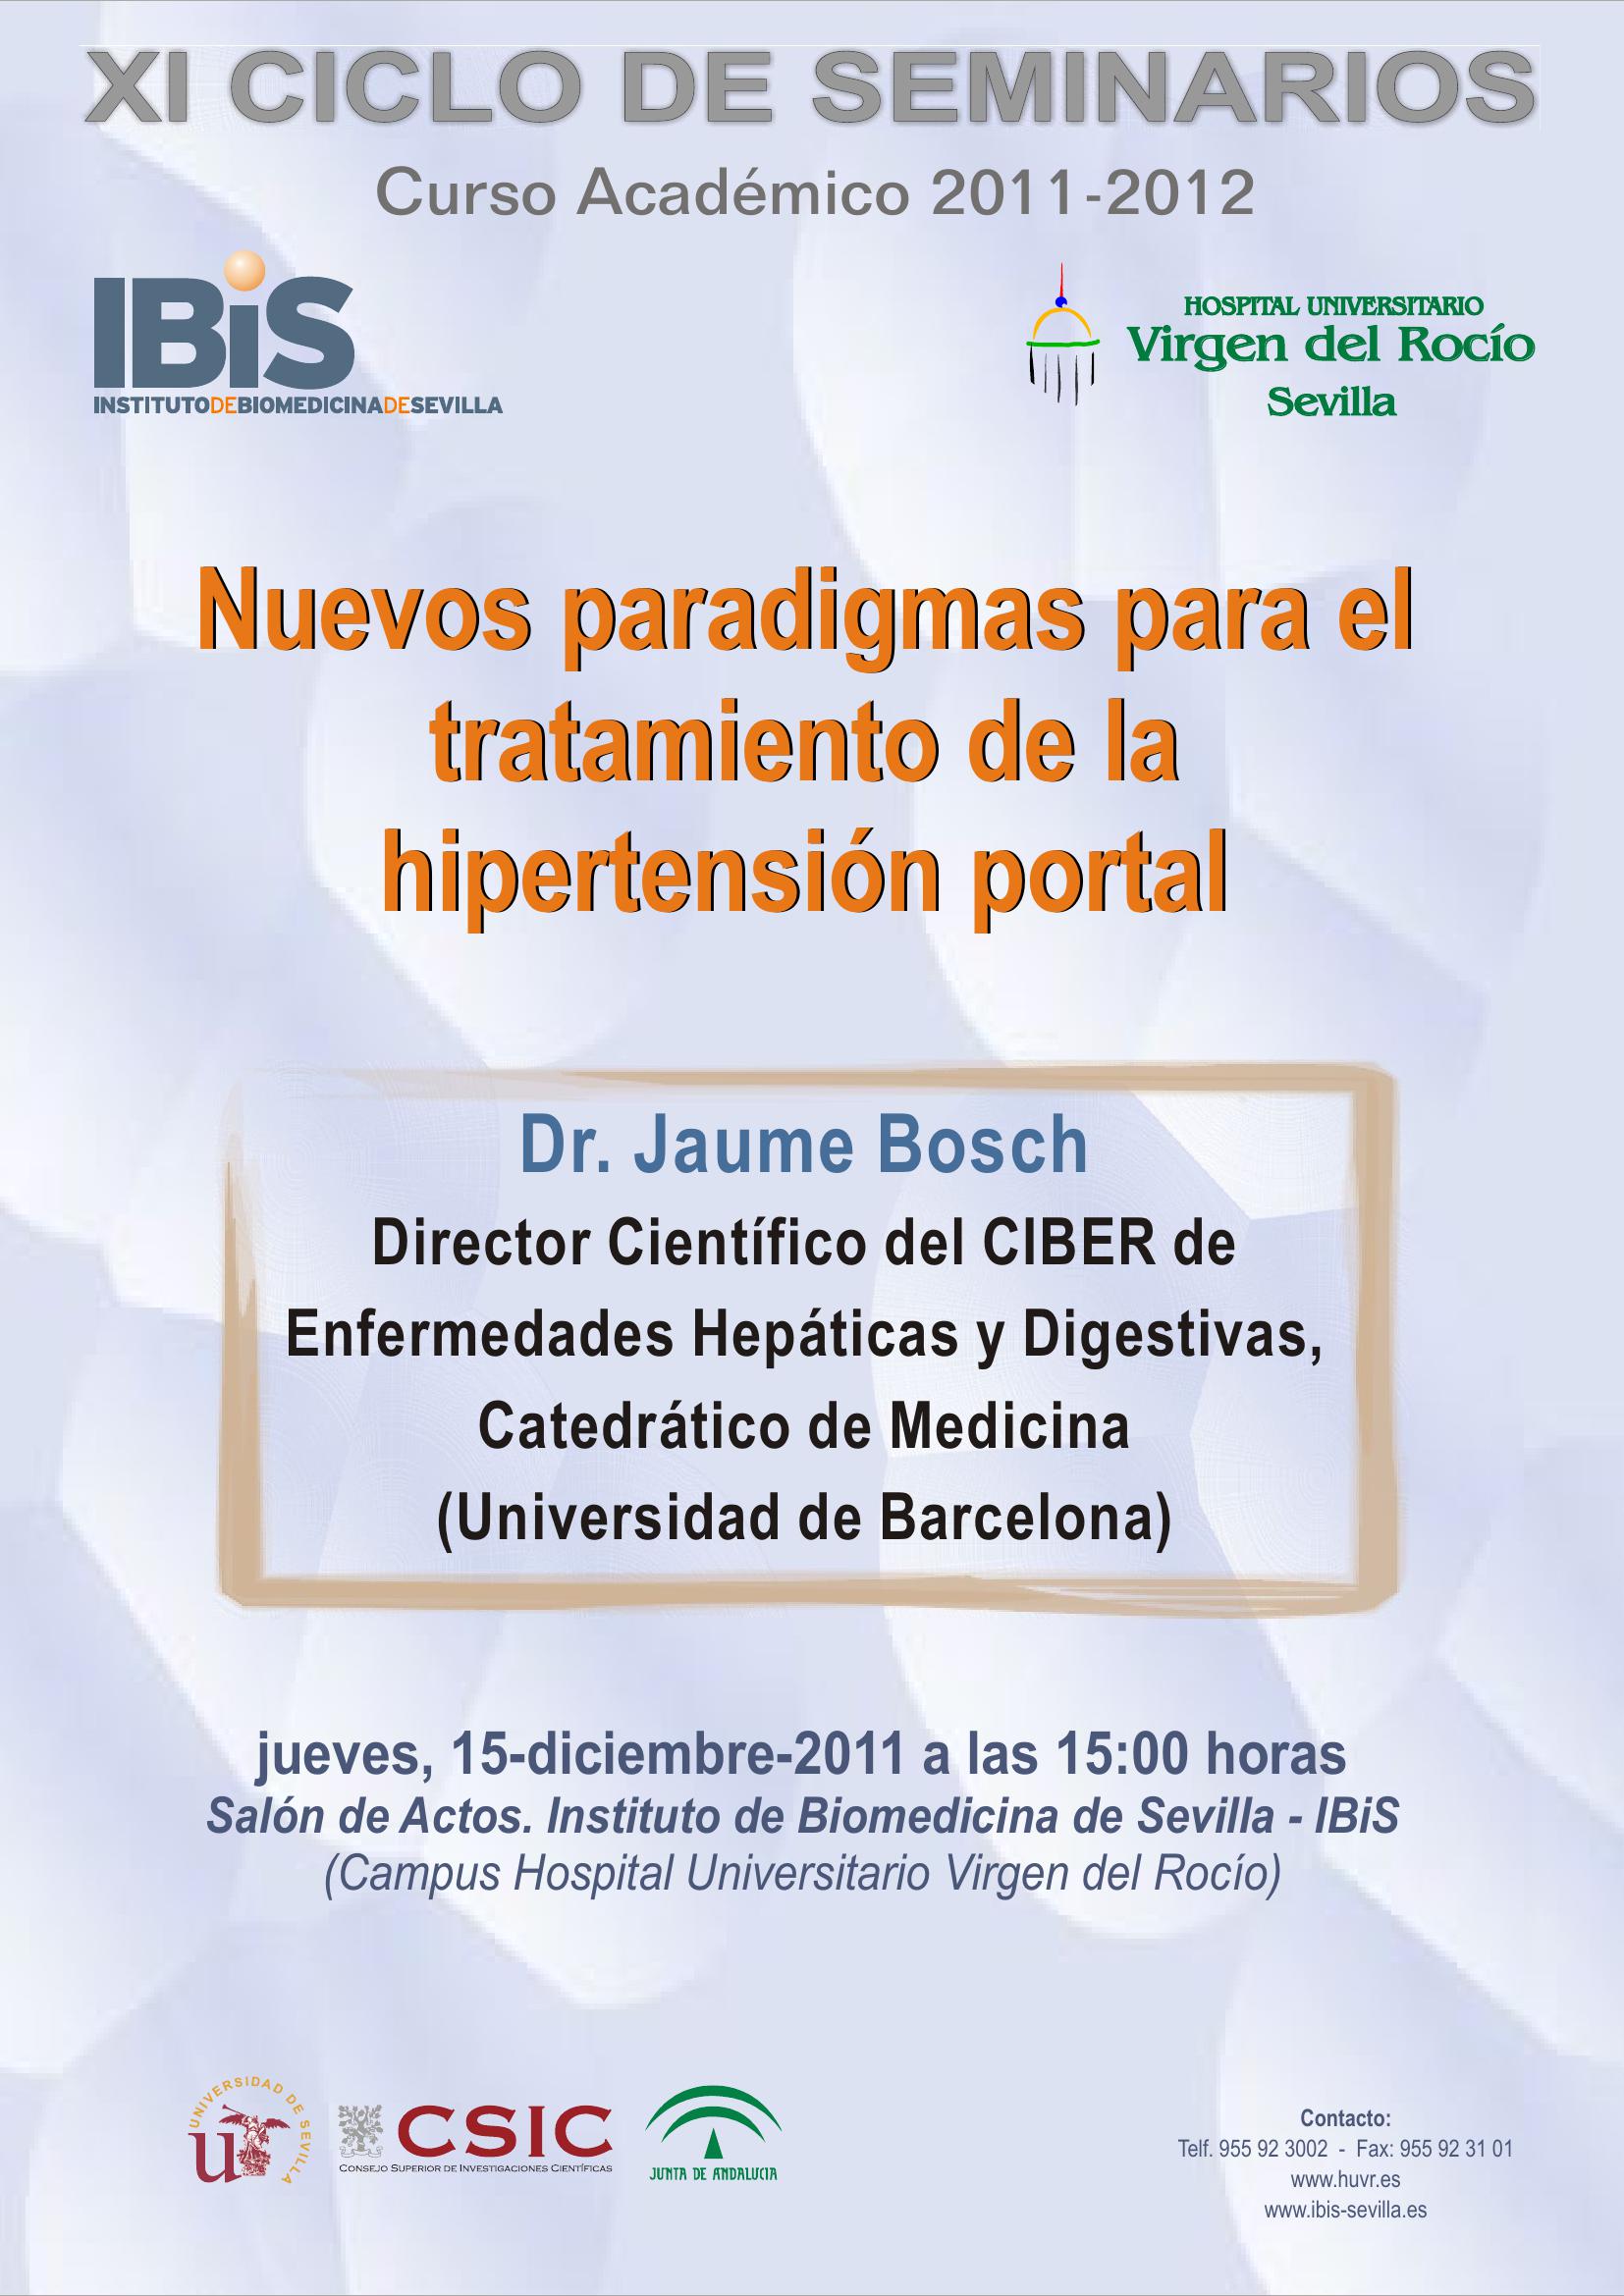 Poster: Nuevos paradigmas para el tratamiento de la hipertensión portal.